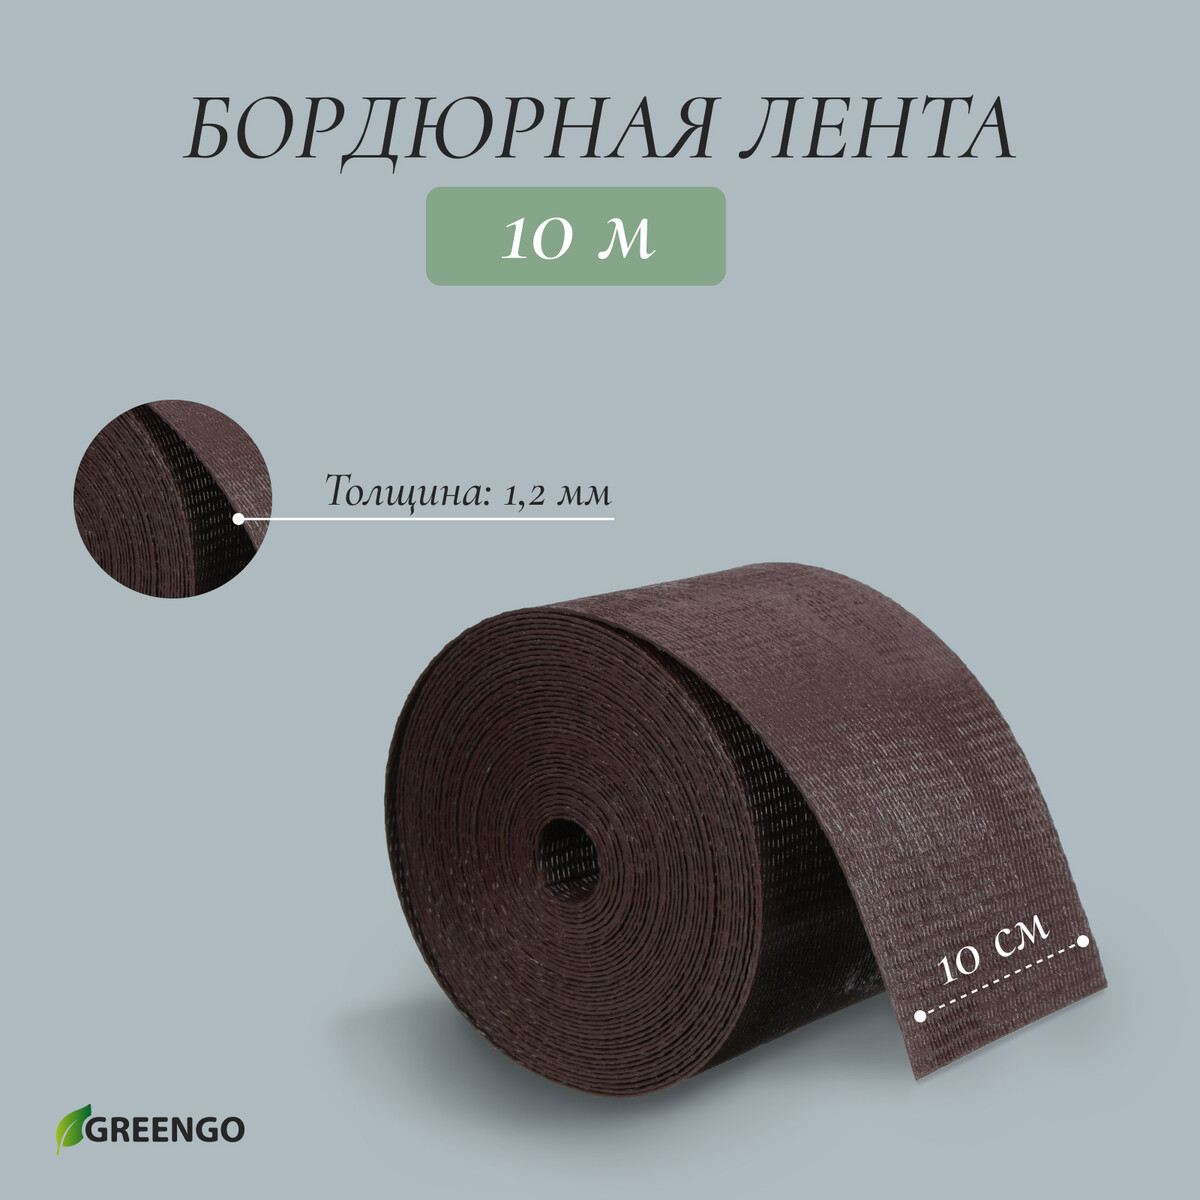 Лента бордюрная, 0.1 × 10 м, толщина 1.2 мм, пластиковая, коричневая, greengo Greengo